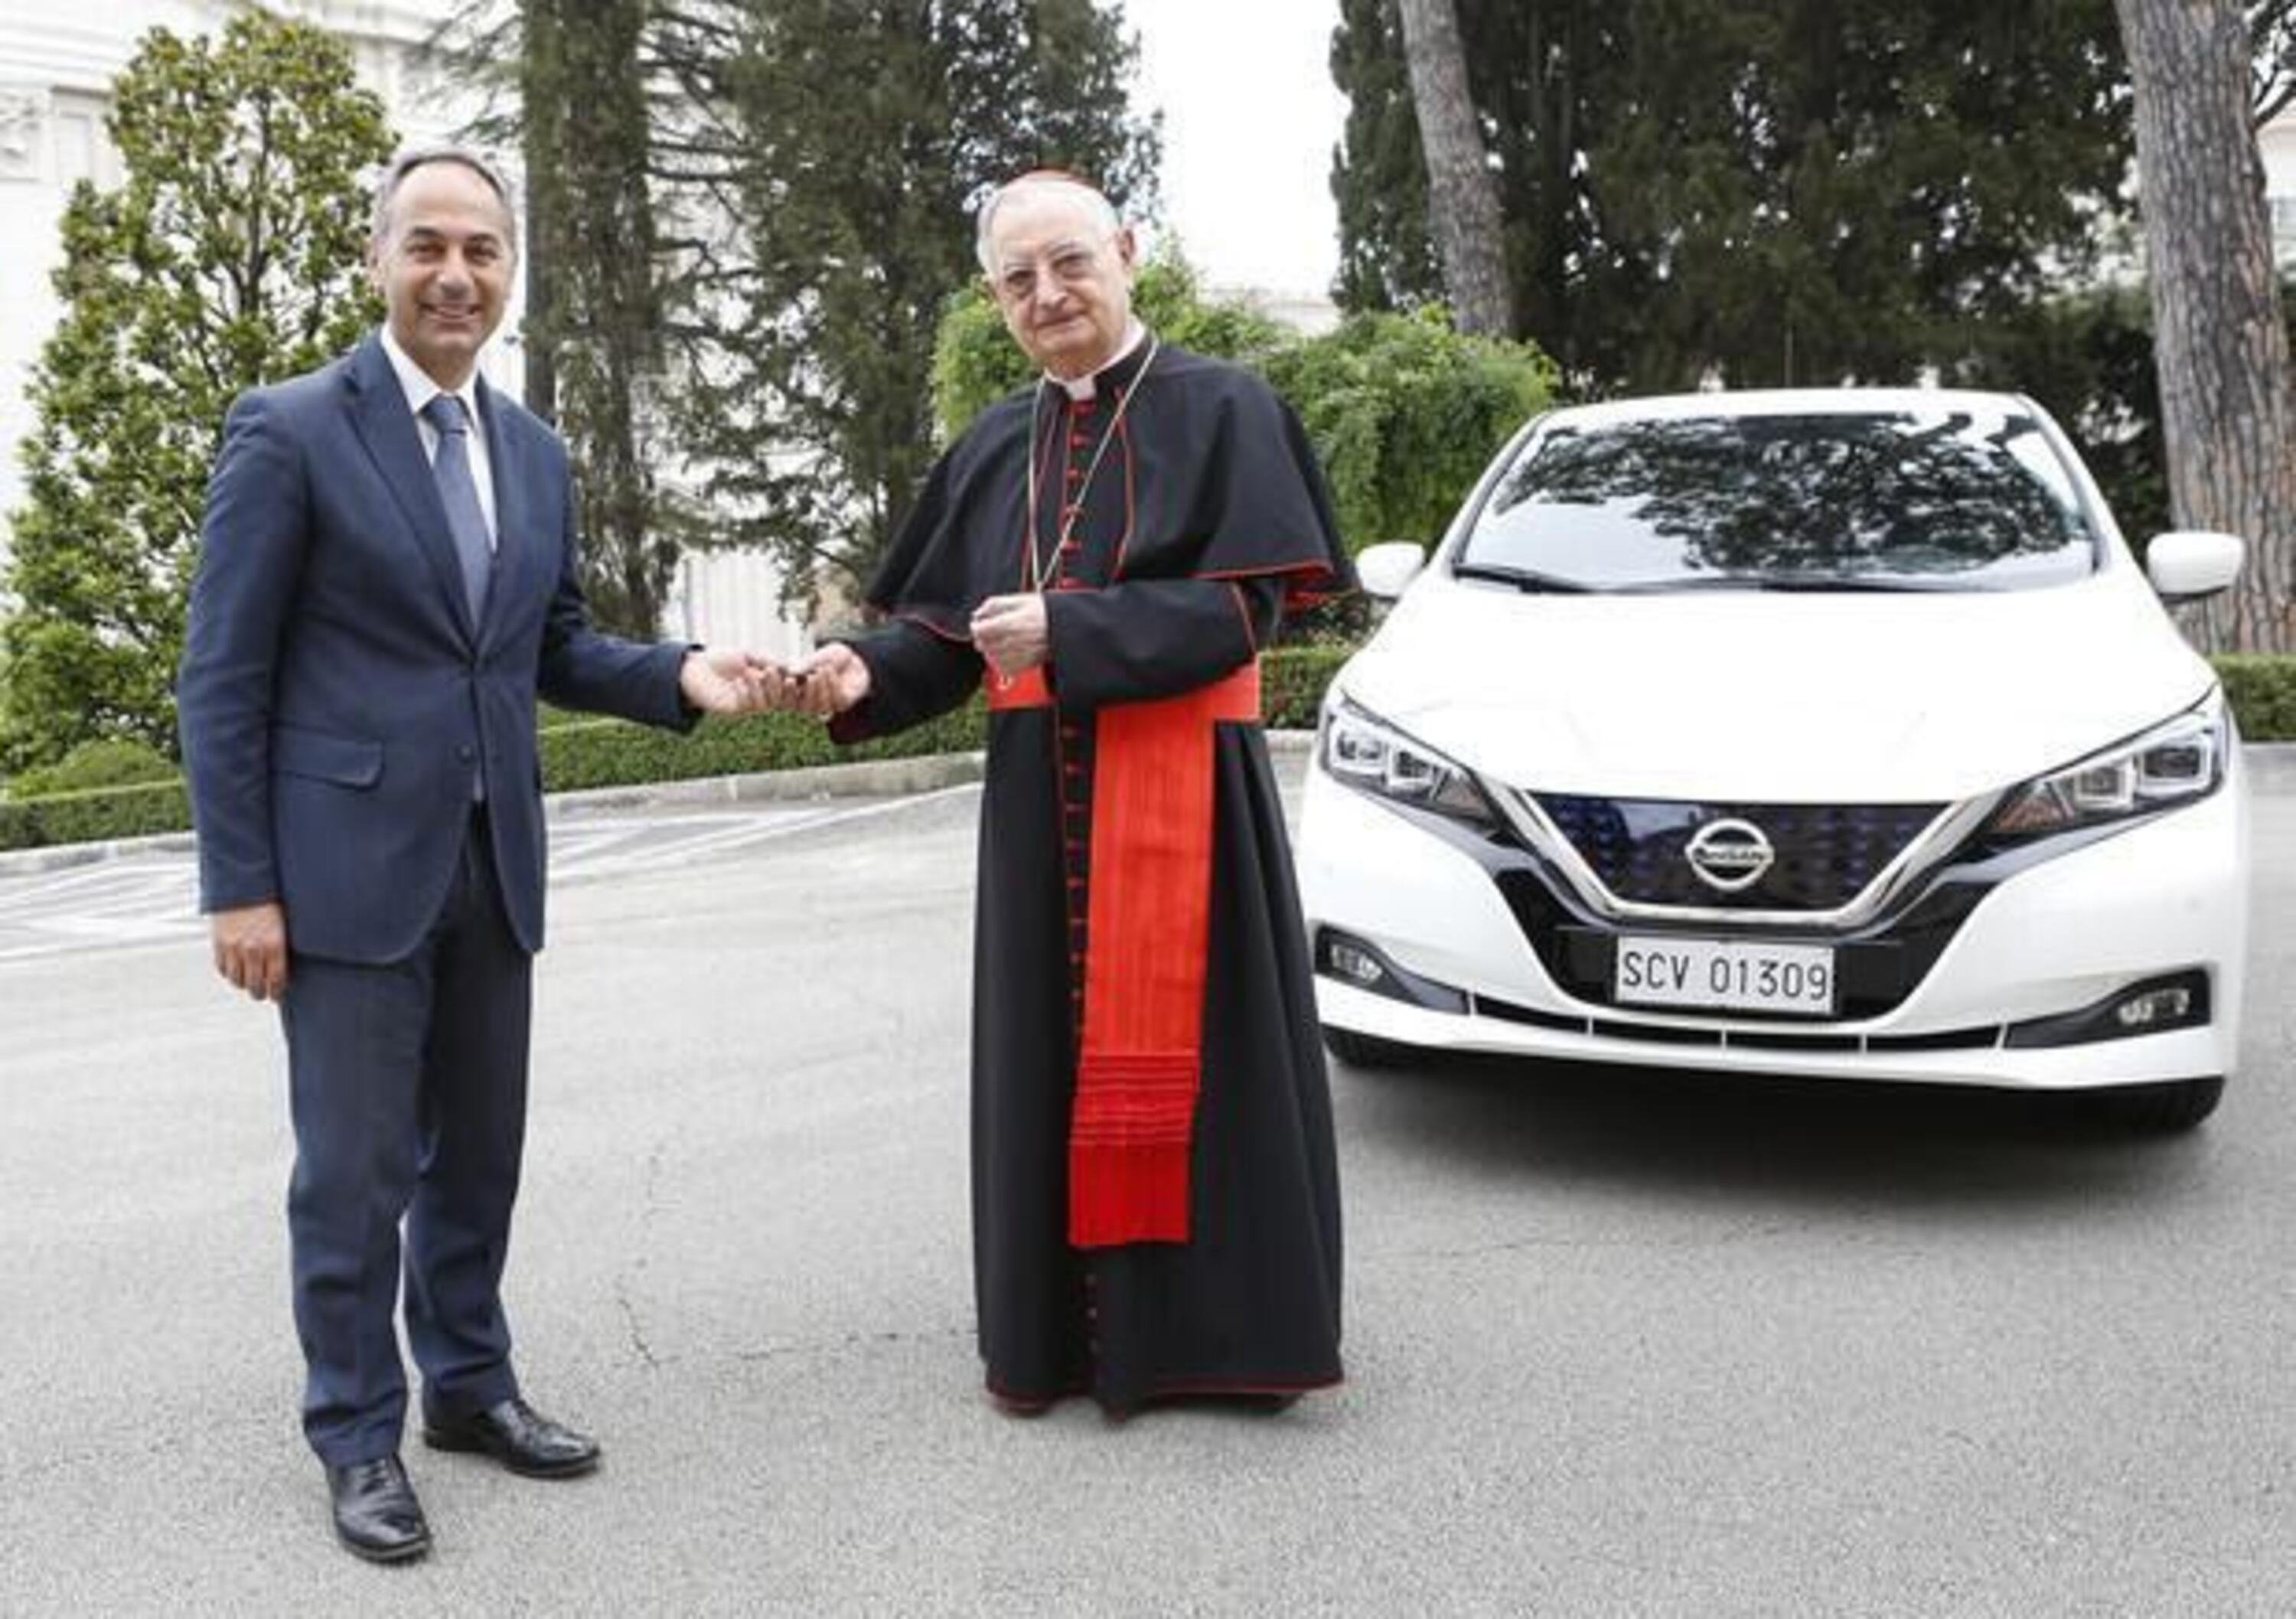 Vaticano a emissioni zero entro il 2050. Si parte con una Nissan Leaf elettrica 